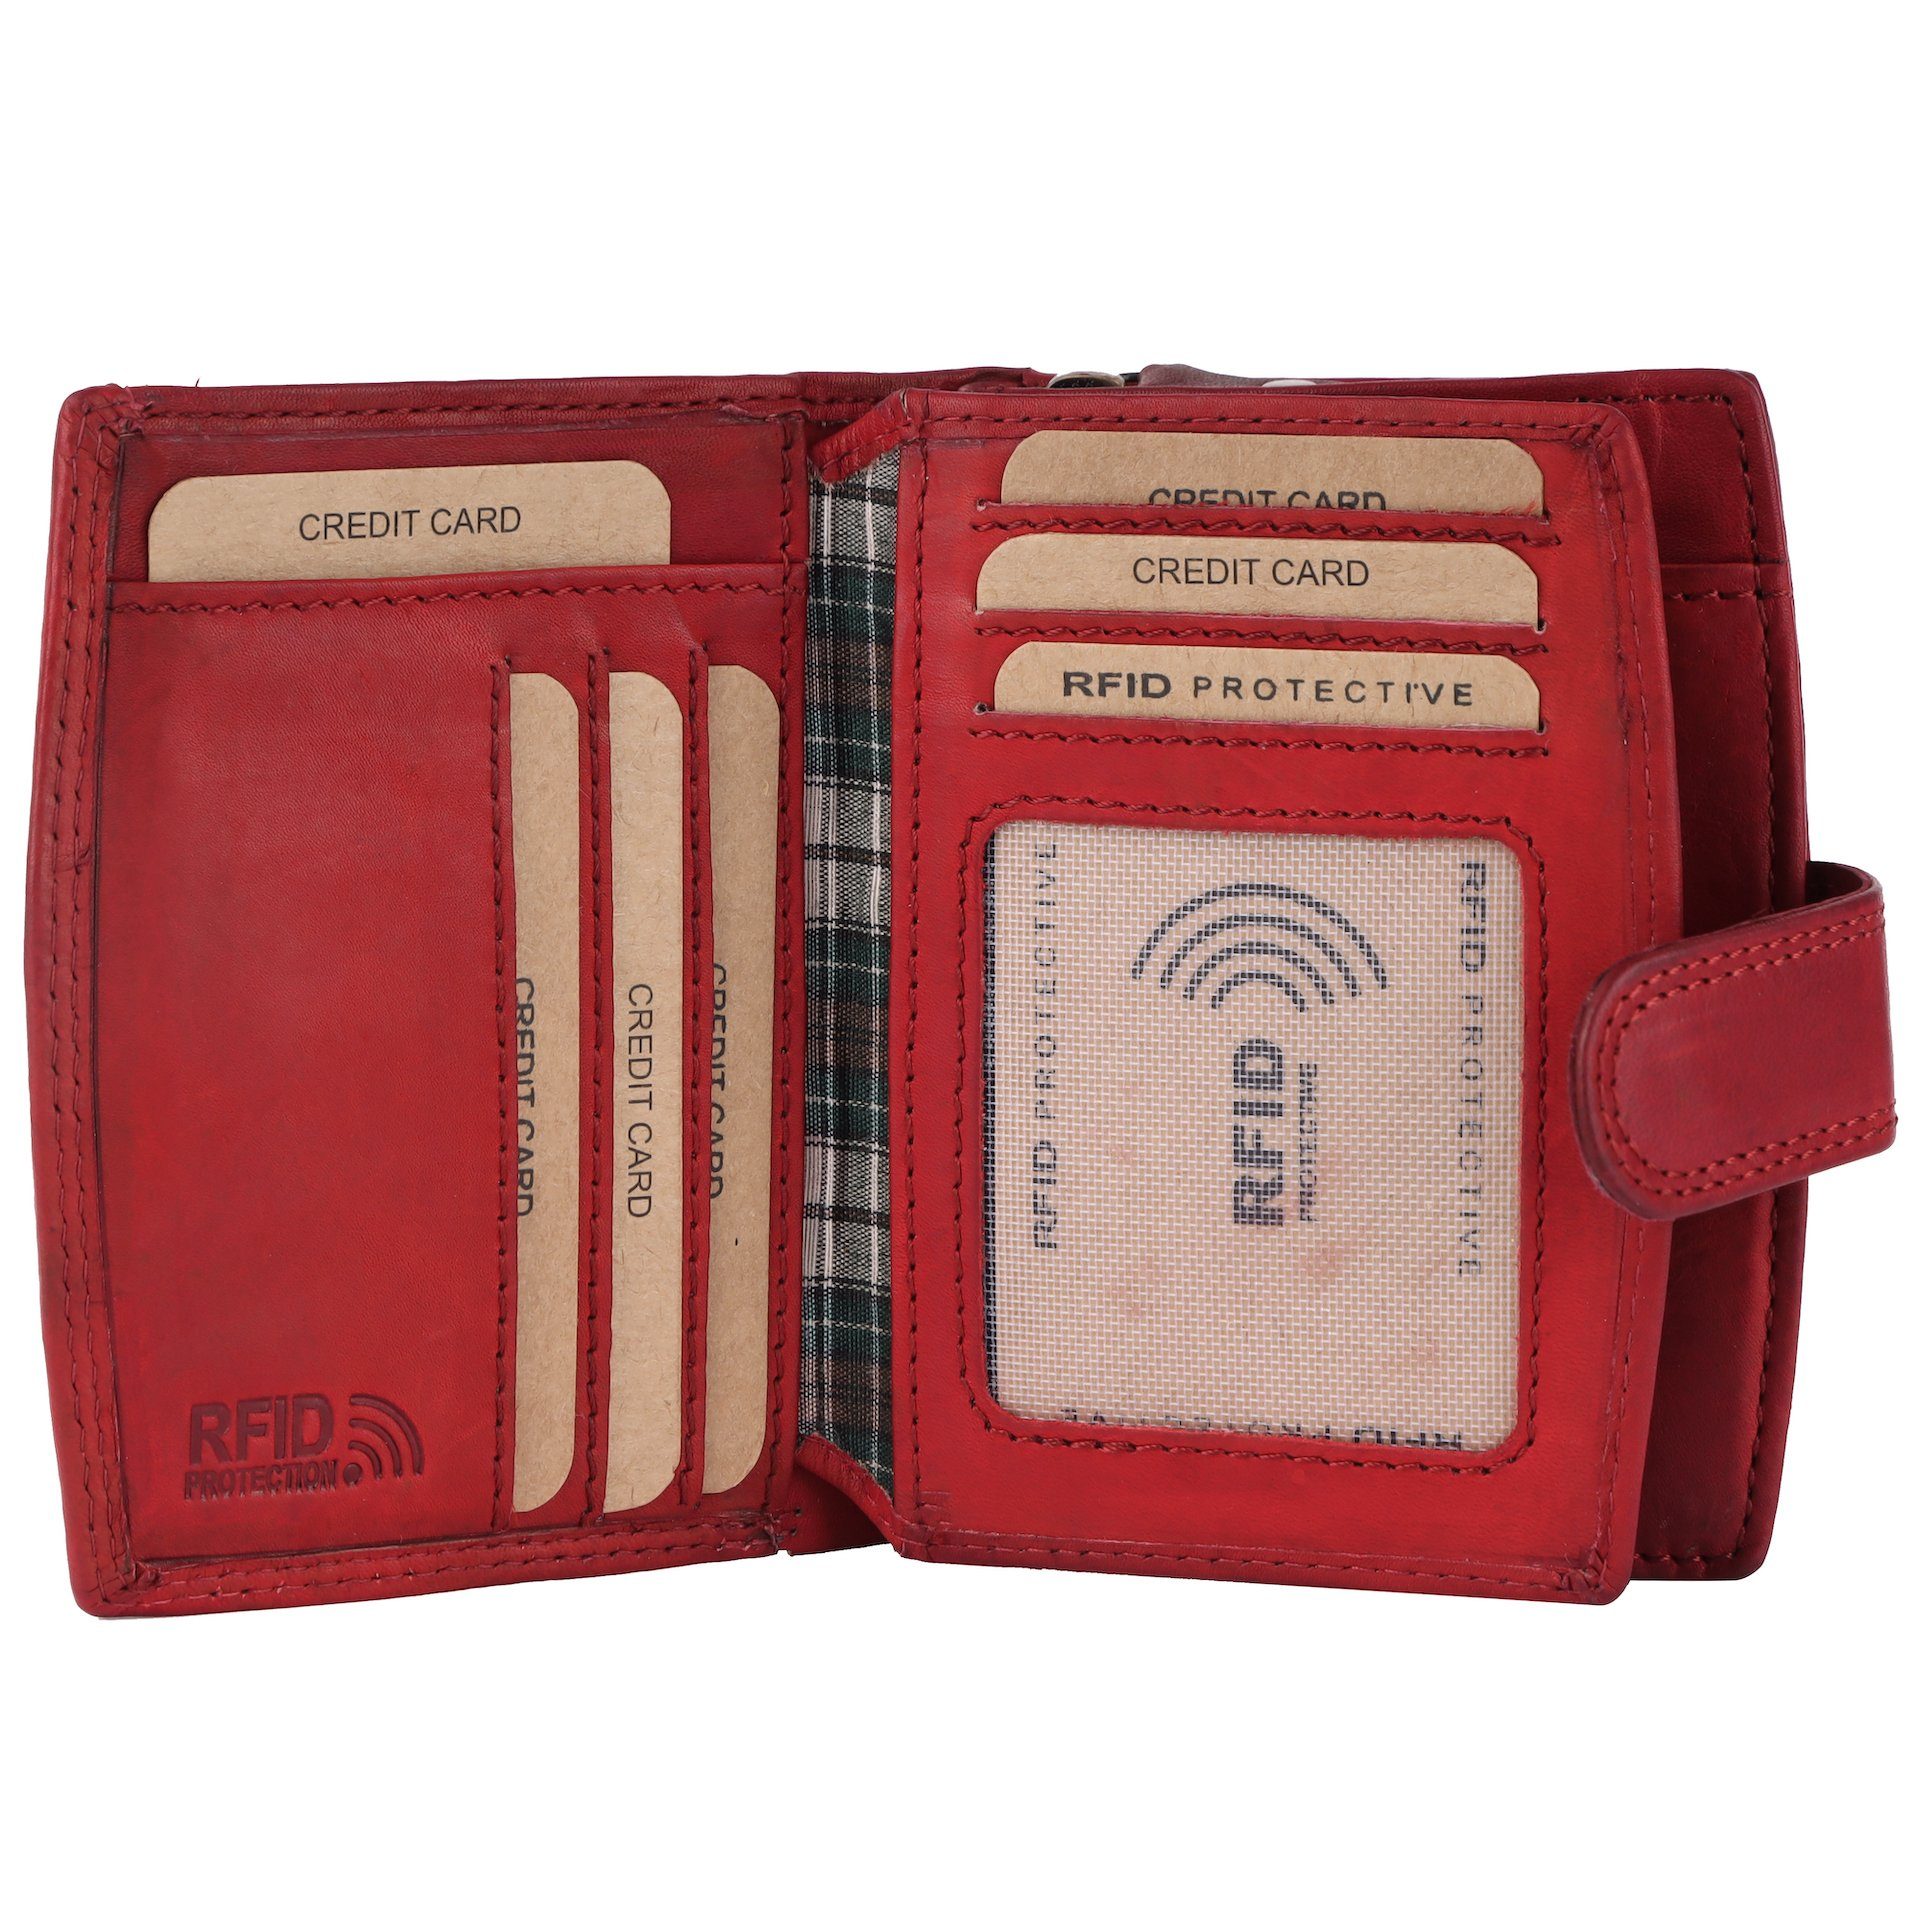 Damen Benthill Kartenfächer Portemonnaie Leder vielen Echt Münzfach RFID-Schutz Geldbörse Geldbeutel mit Reißverschlussfach Kartenfächer, Rot RFID